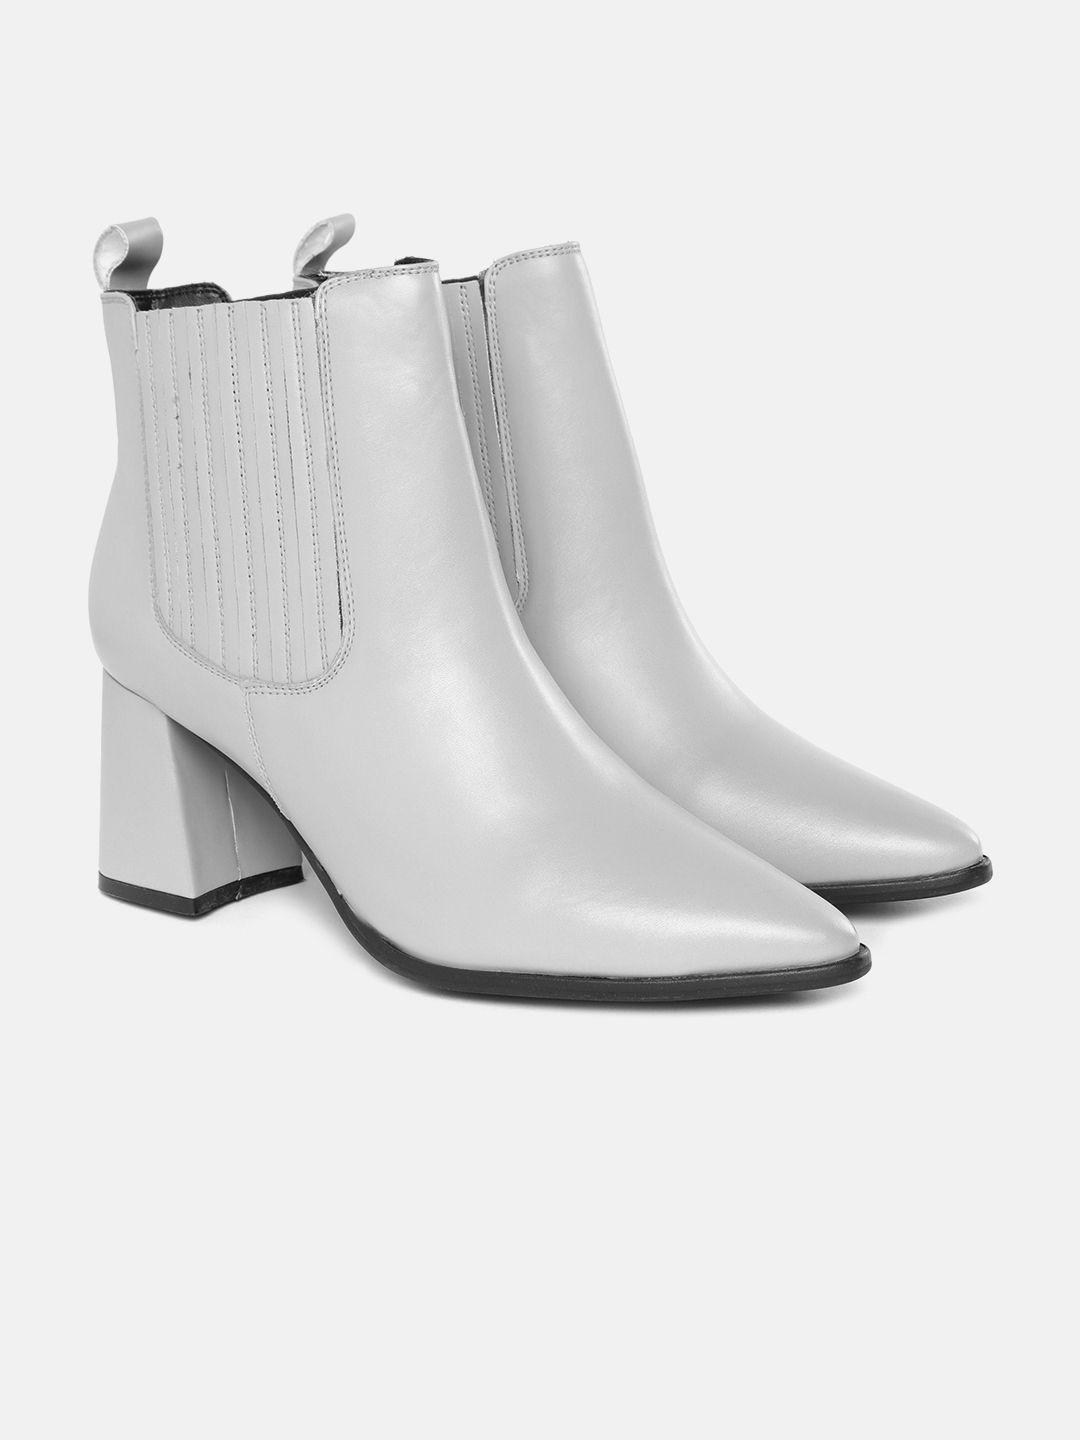 mast & harbour women grey mid-top pointed toe regular block heel boots